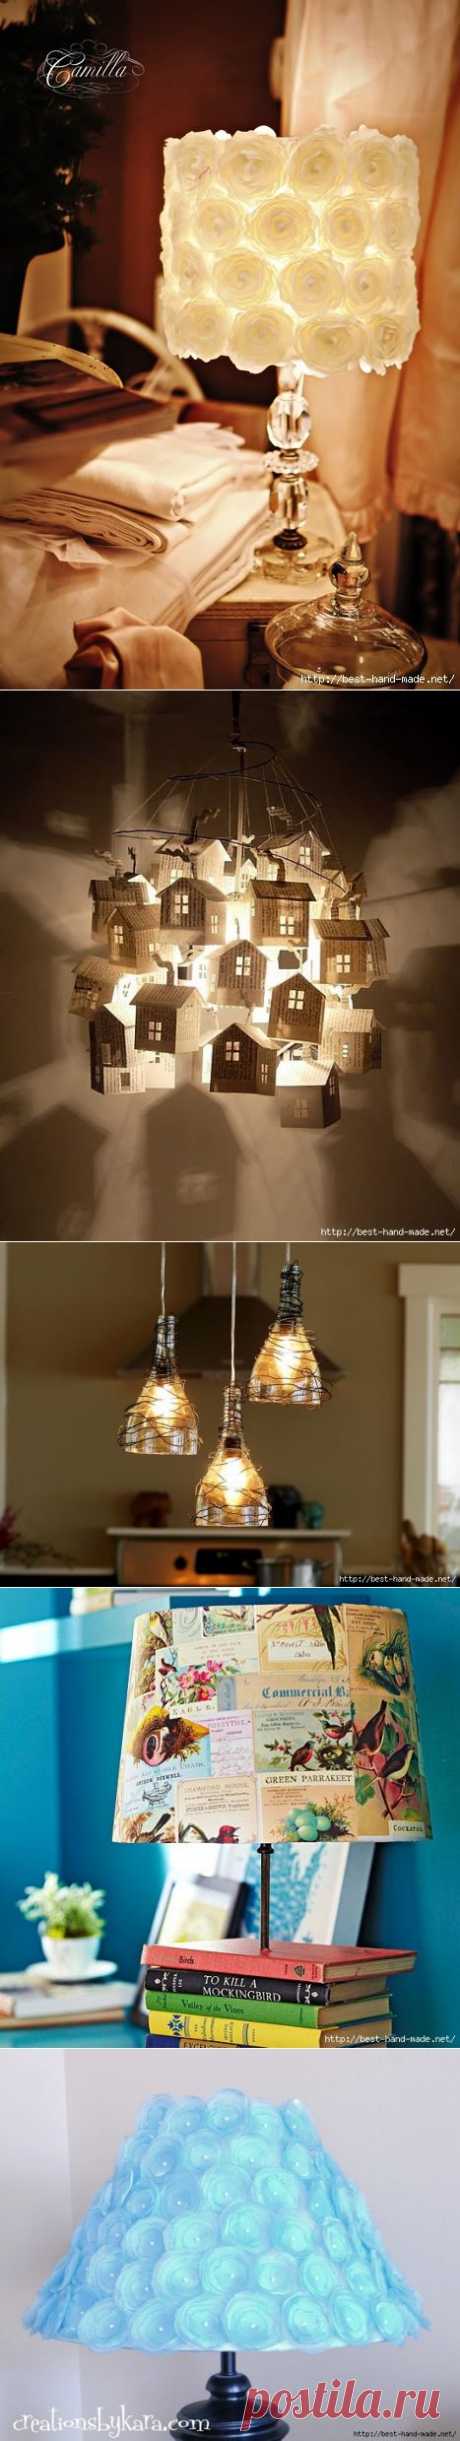 Оригинальные лампы и абажуры своими руками. Идеи, мастер-классы